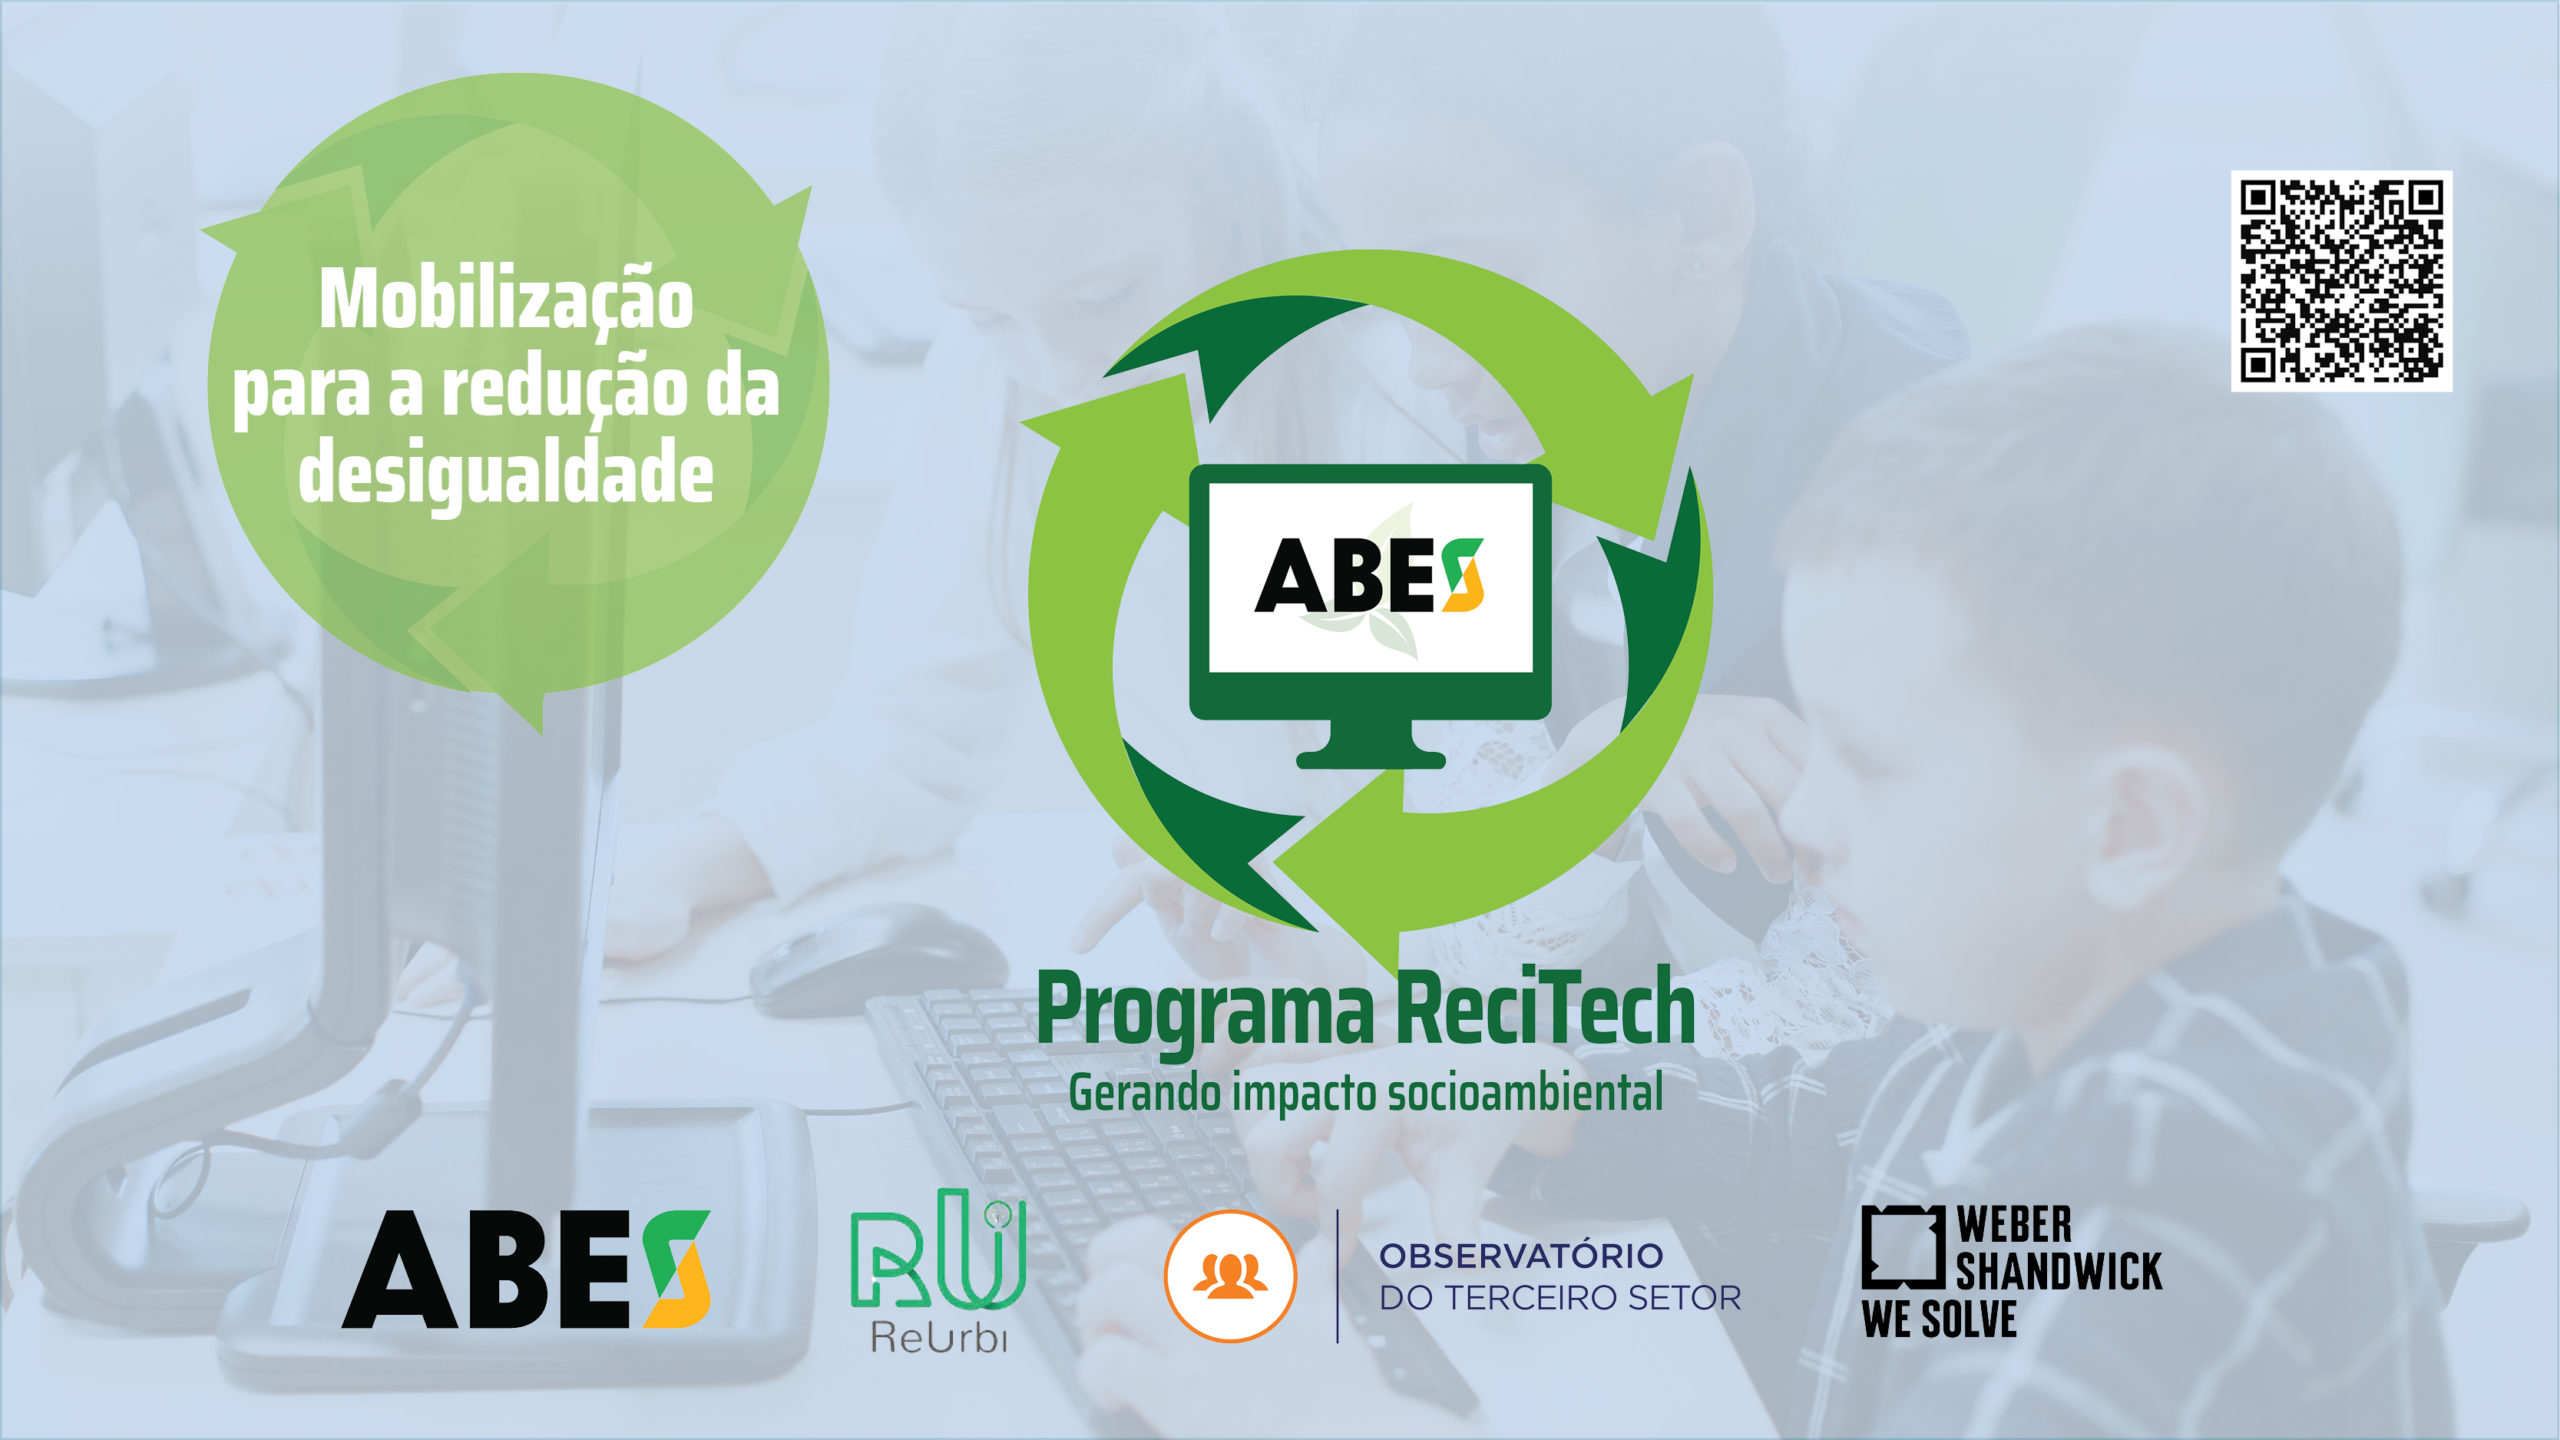 ABES, ReUrbi e Observatório do Terceiro Setor, com o apoio da Weber Shandwick, lançam mobilização para redução da desigualdade no Brasil